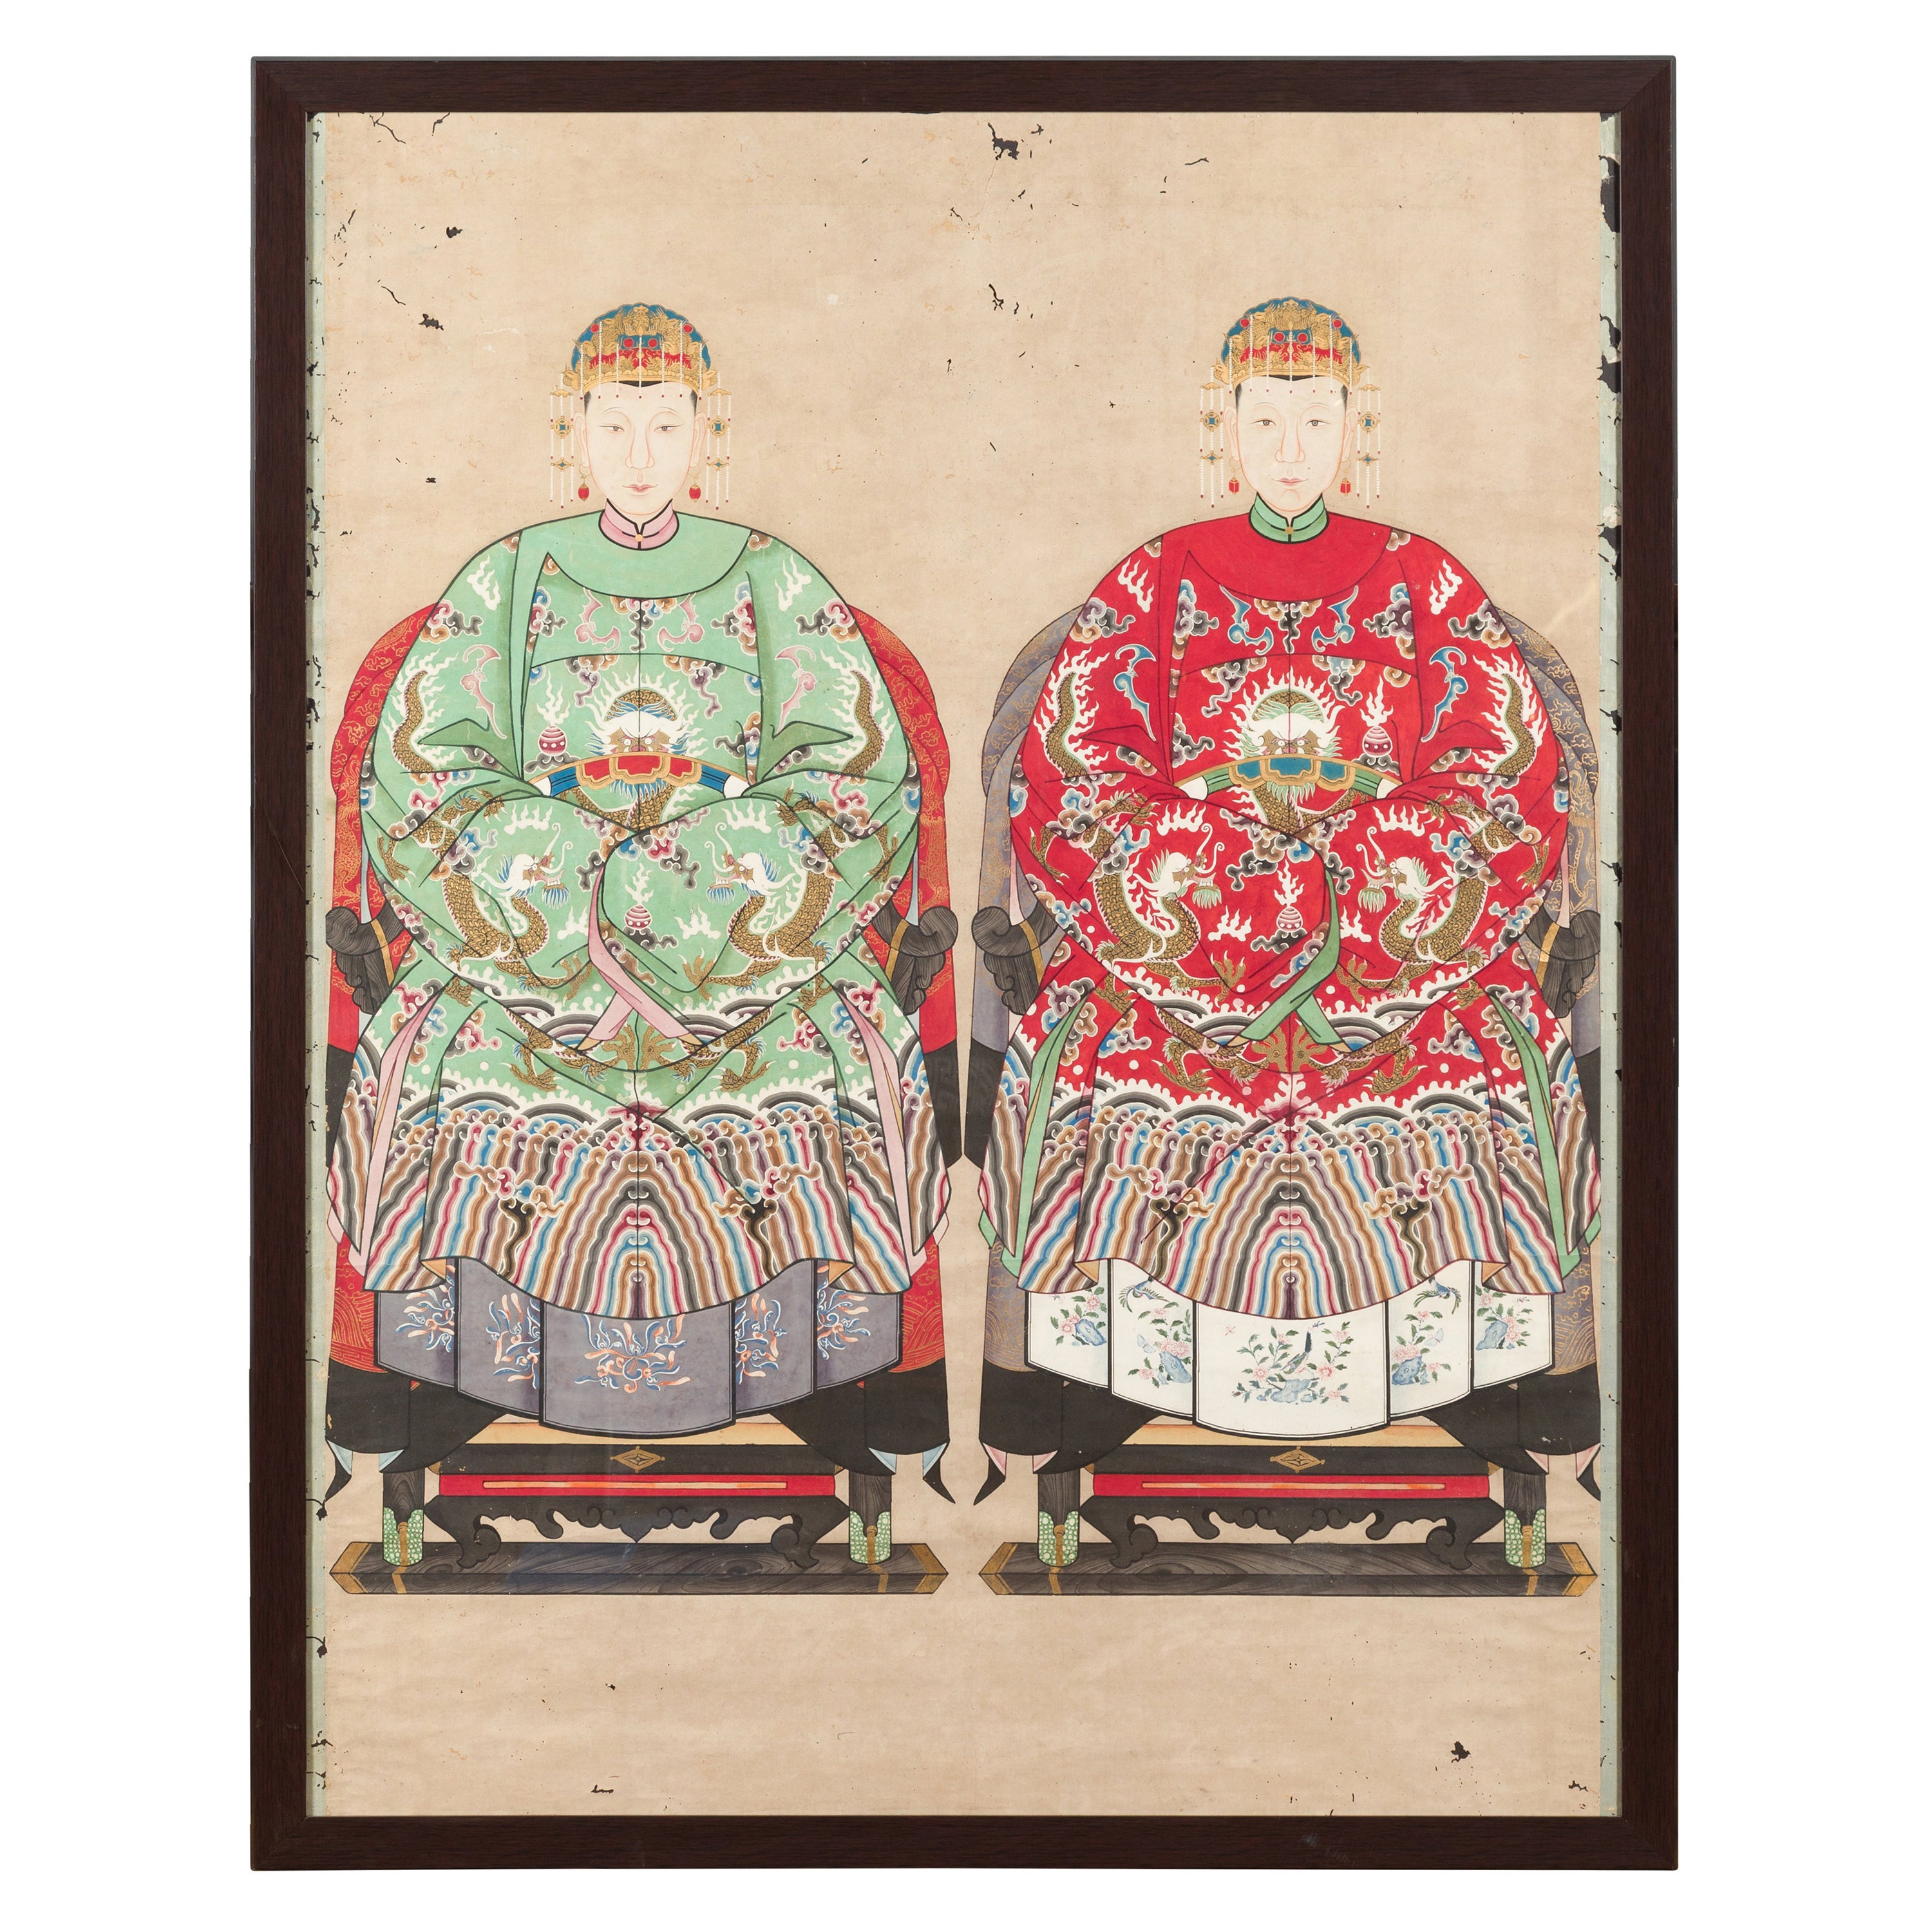 Chinesisches Gemälde einer königlichen Familie aus der Qing-Dynastie mit Drachenmotiven